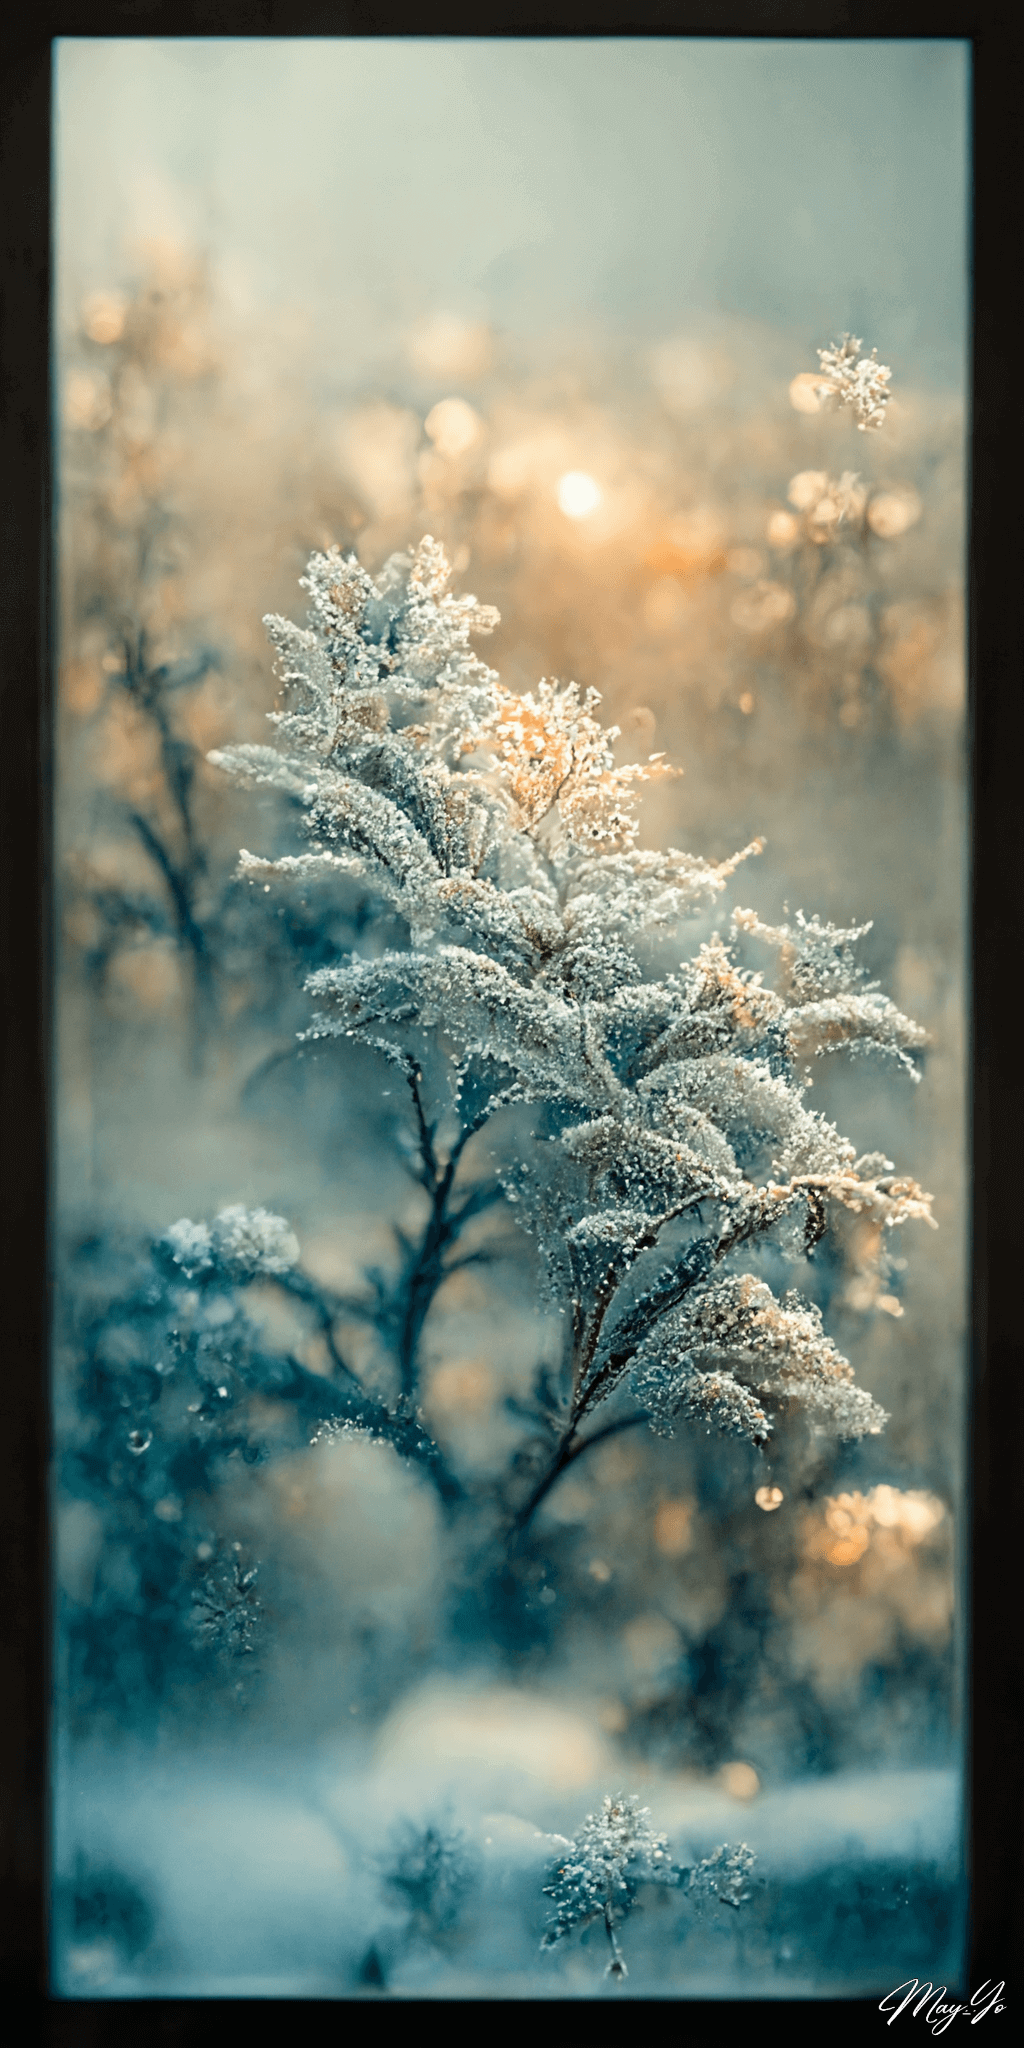 曇りガラスの向こうの冬の森の壁紙イラスト 雪化粧の森の朝のイラスト待受 AIイラスト待受 縦長画像 snowy forest fiction art frostedglass